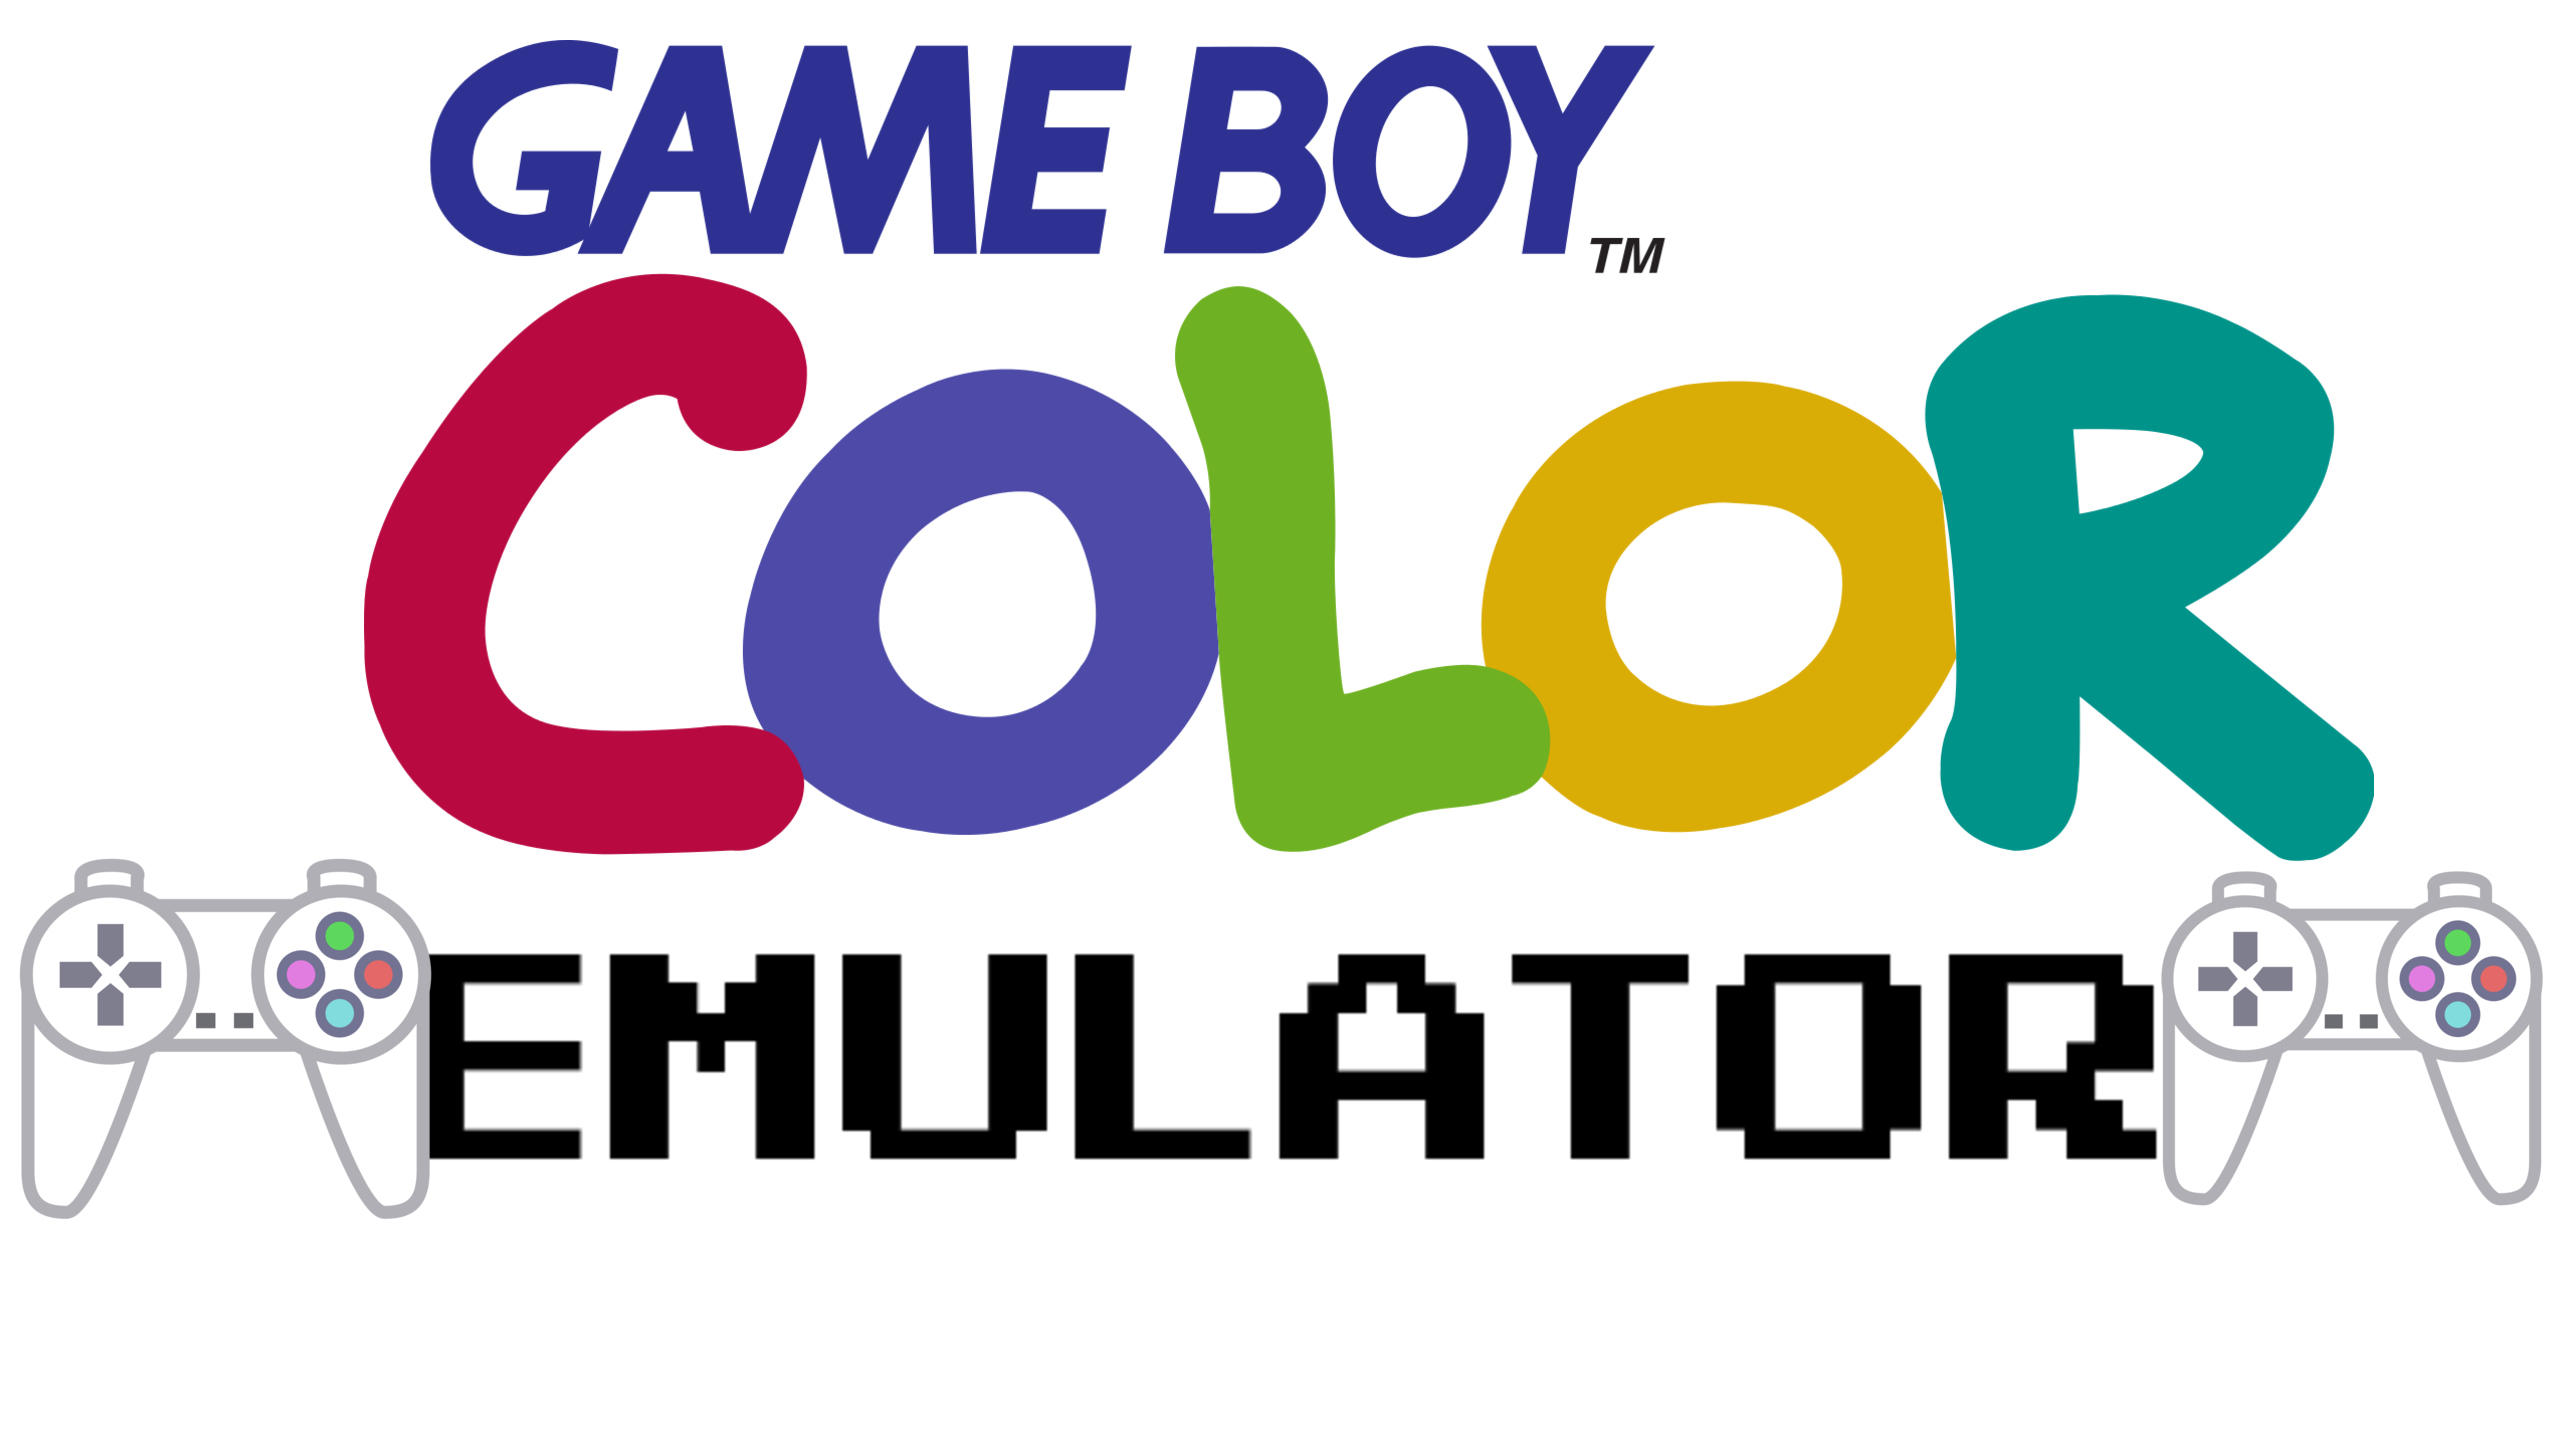 gameboy color emulator download